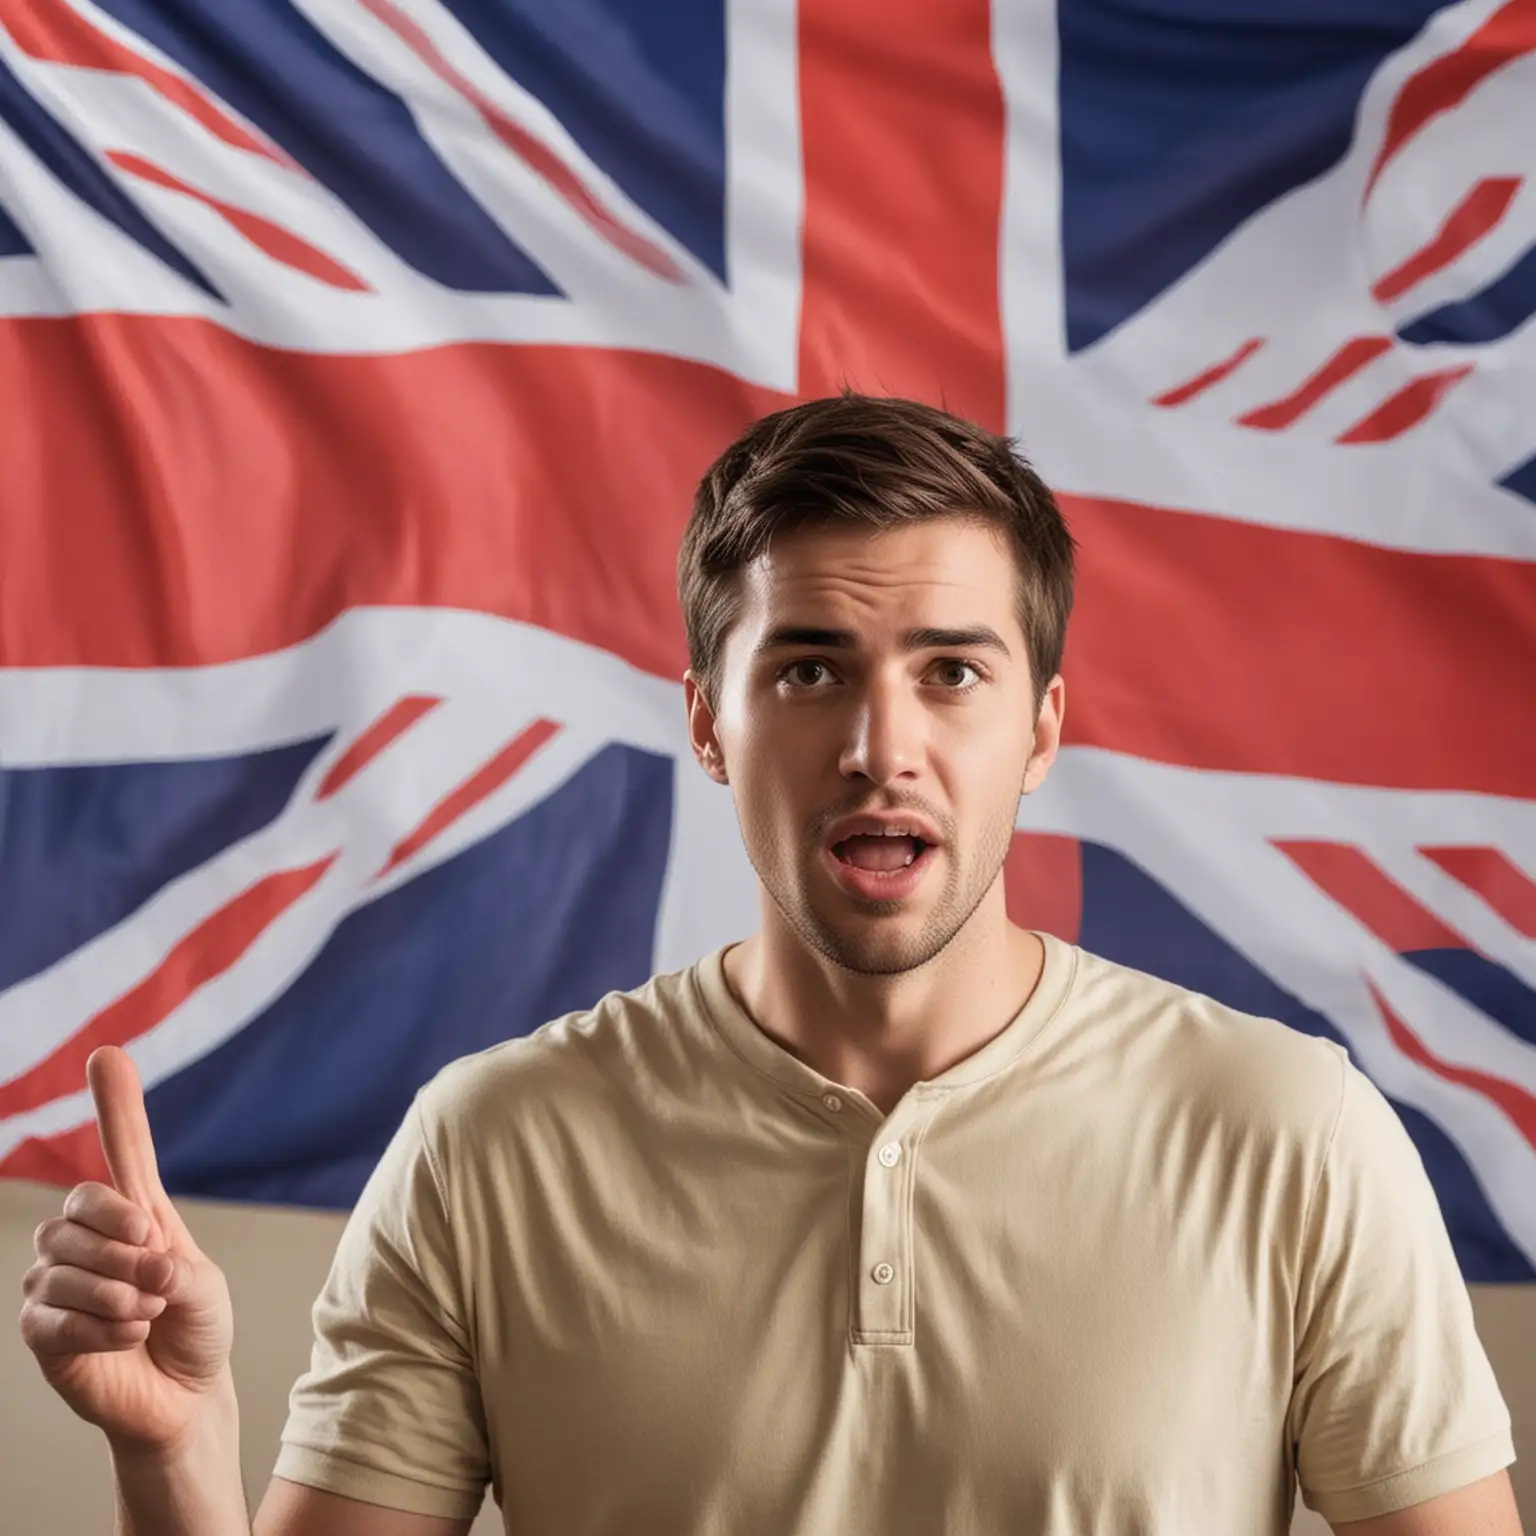 zdjęcie przedstawia mężczyznę mówiącego po angielsku w tle znajduje się brytyjska flaga całość sugeruje że jest to kurs języka angielskiego dla początkujących